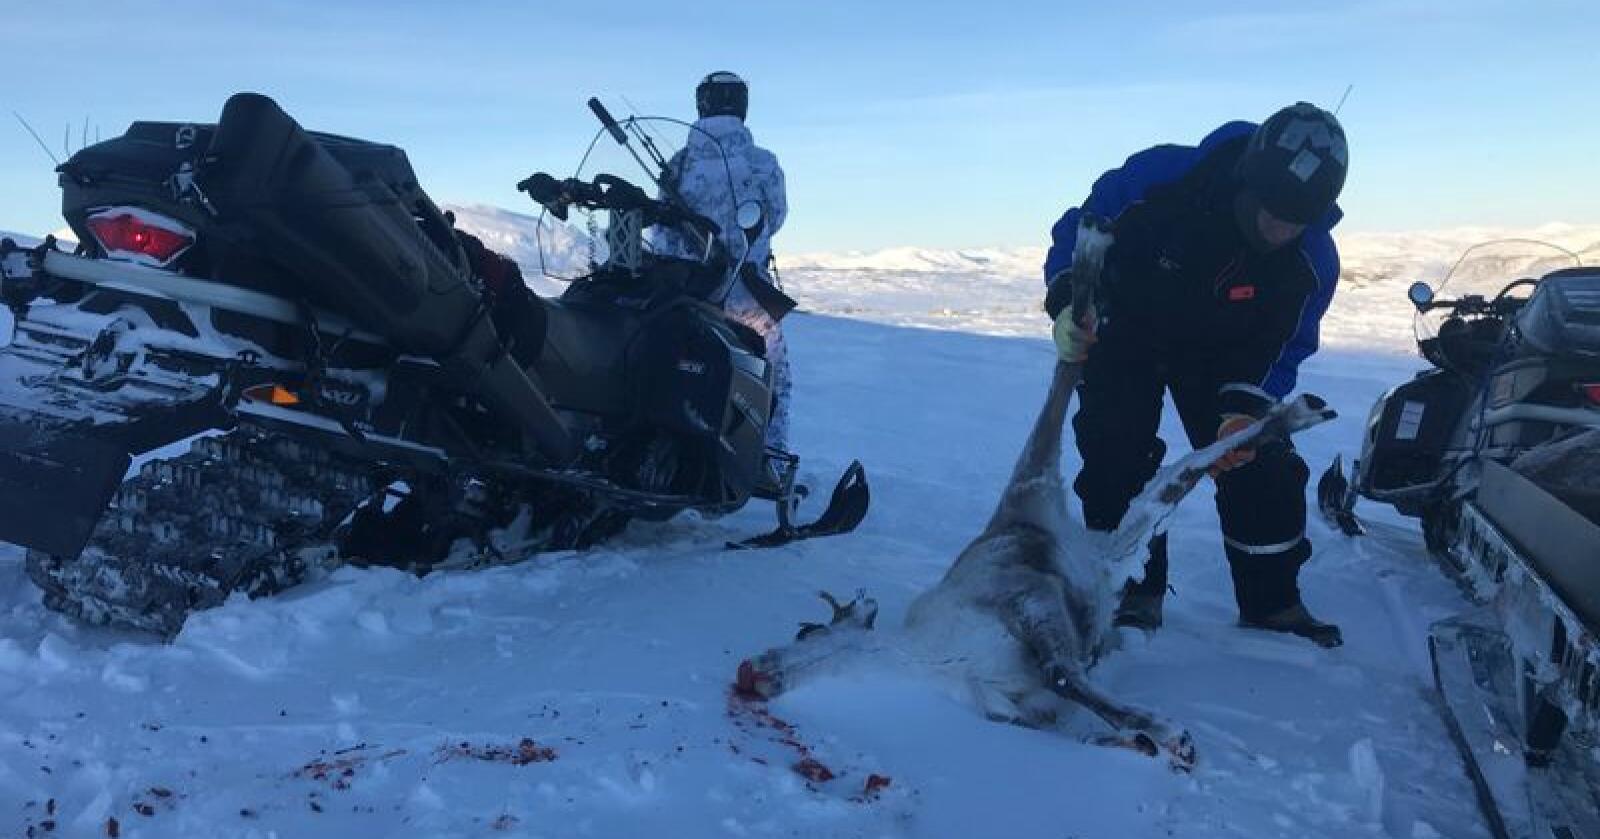 Etter seks uker med statlig jakt av villrein i Nordfjella i vinter var 531 dyr felt. Da gjensto fremdeles om lag 1.000 rein i stammen, som skal utryddes helt. Foto: Sondre Dalaker / NRK / NTB scanpix